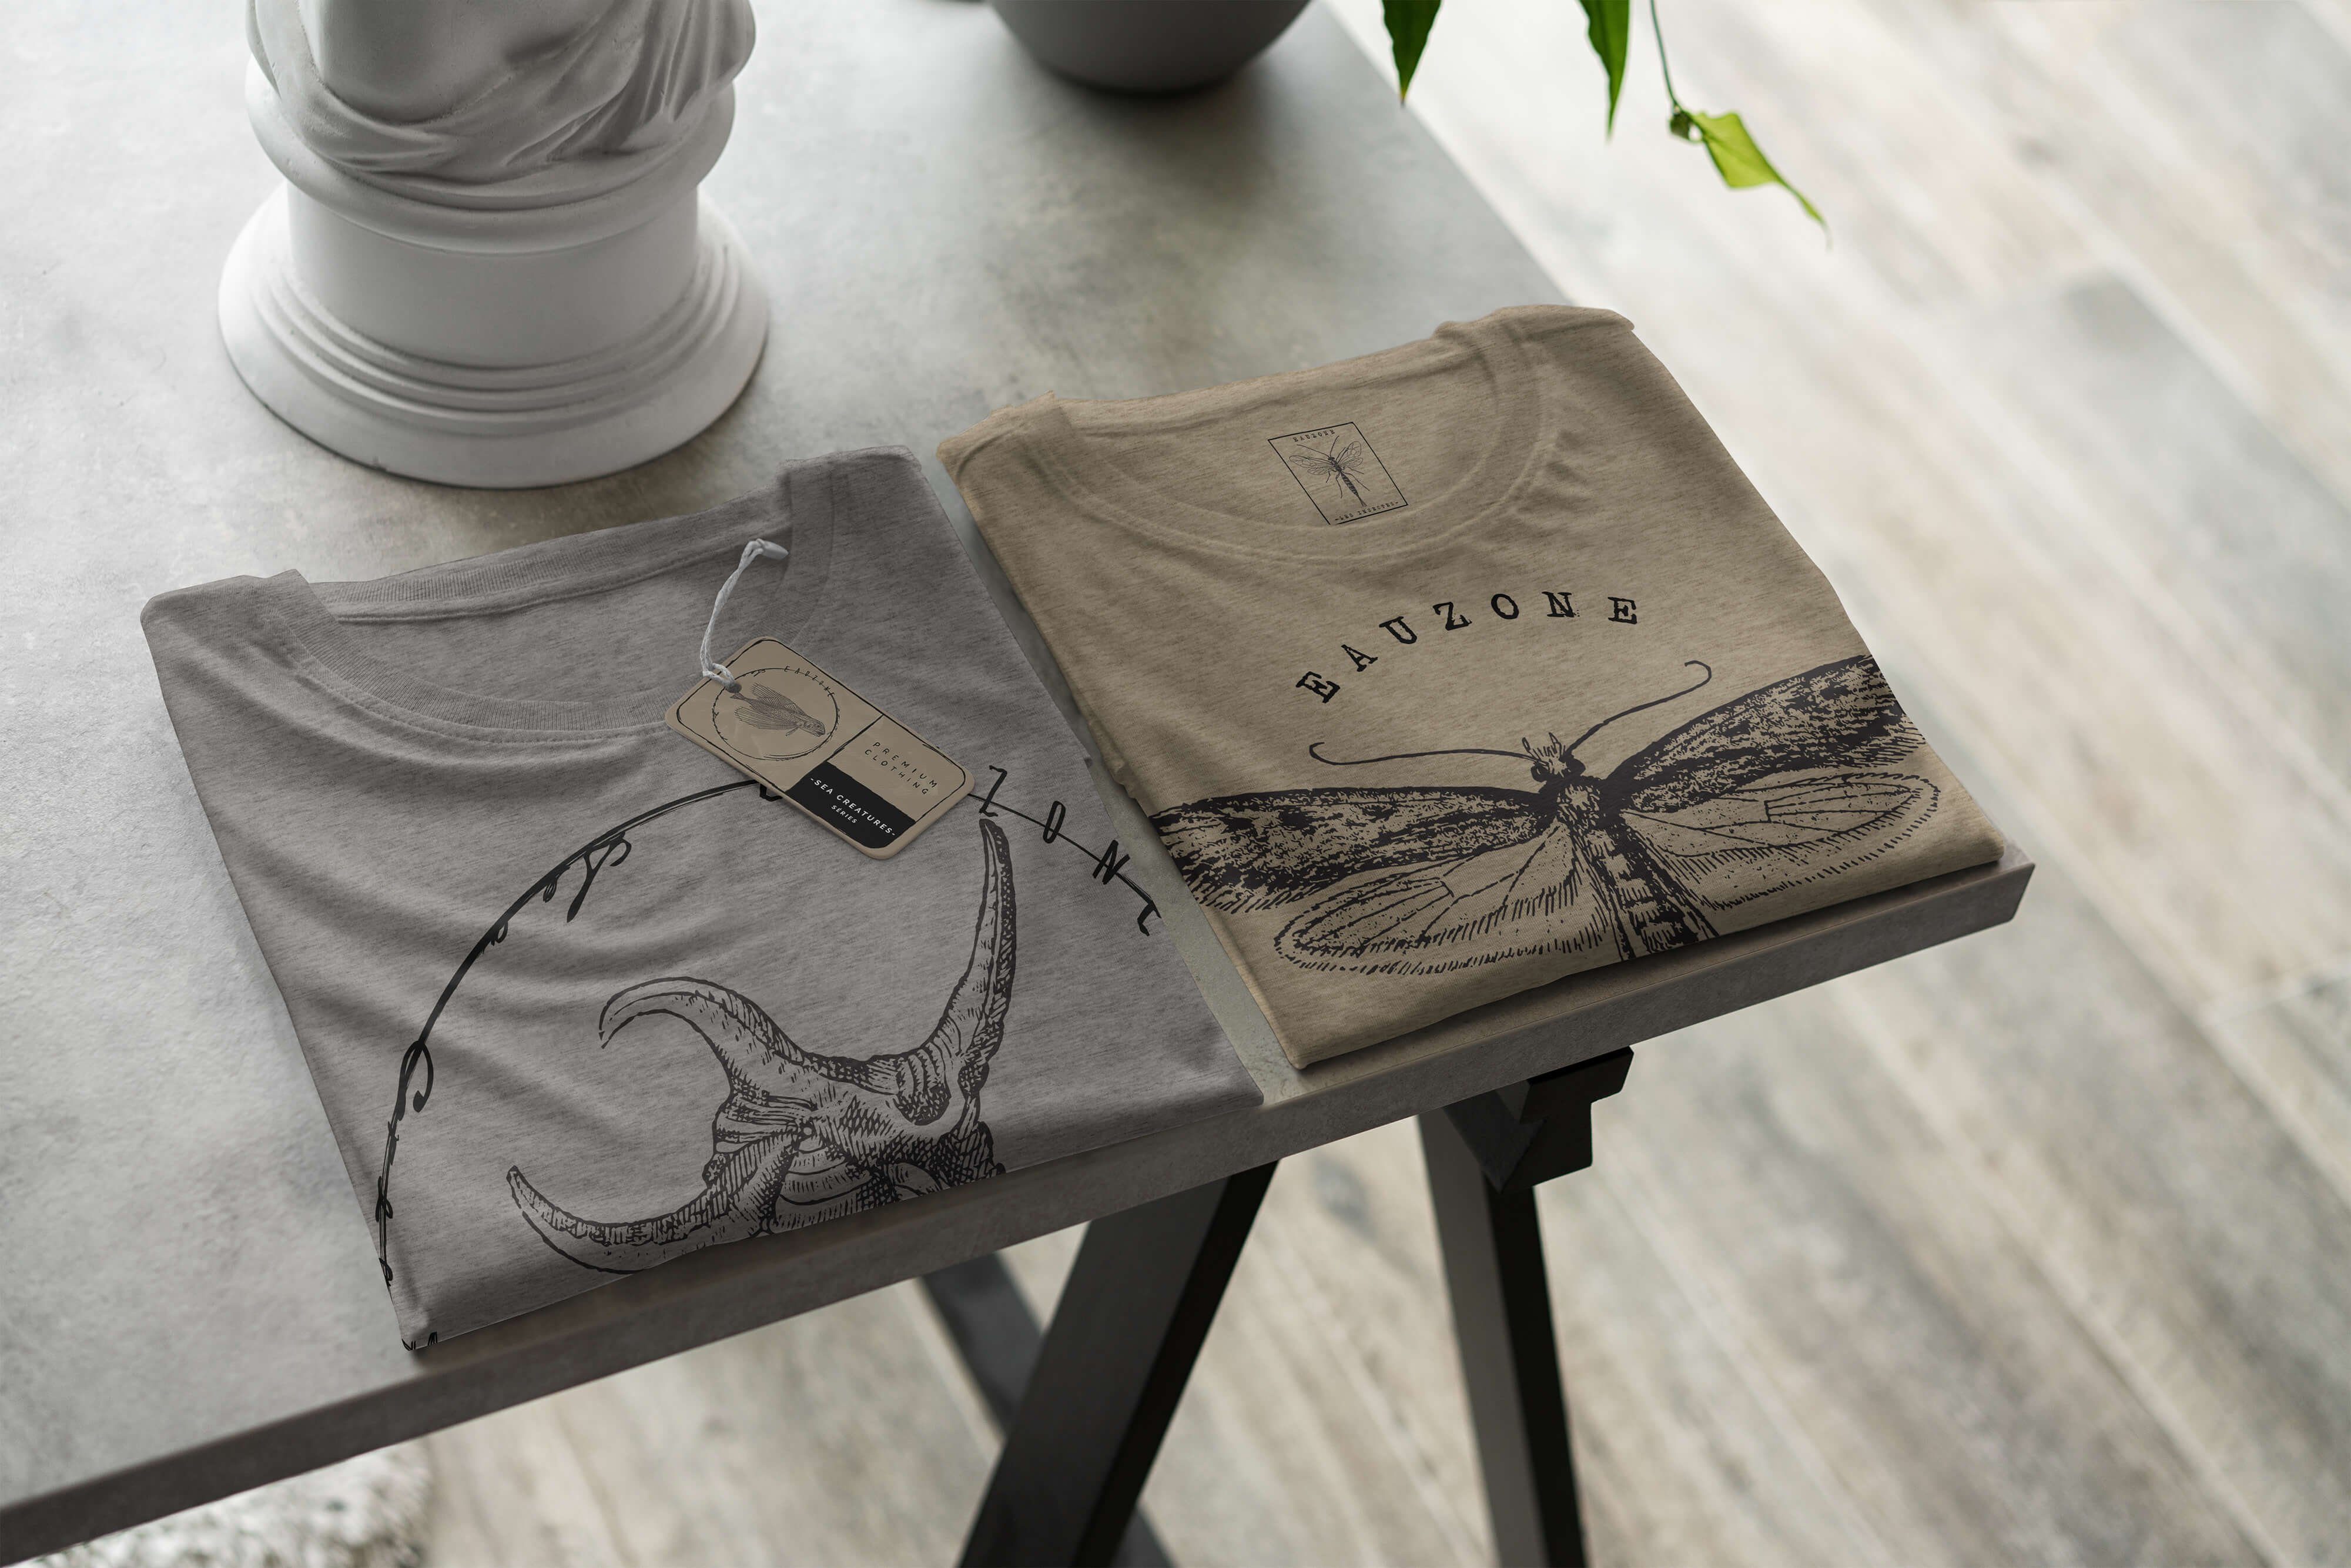 Sea - feine 043 T-Shirt Ash Creatures, Struktur und Schnitt Art T-Shirt Sinus sportlicher Serie: Sea Fische / Tiefsee